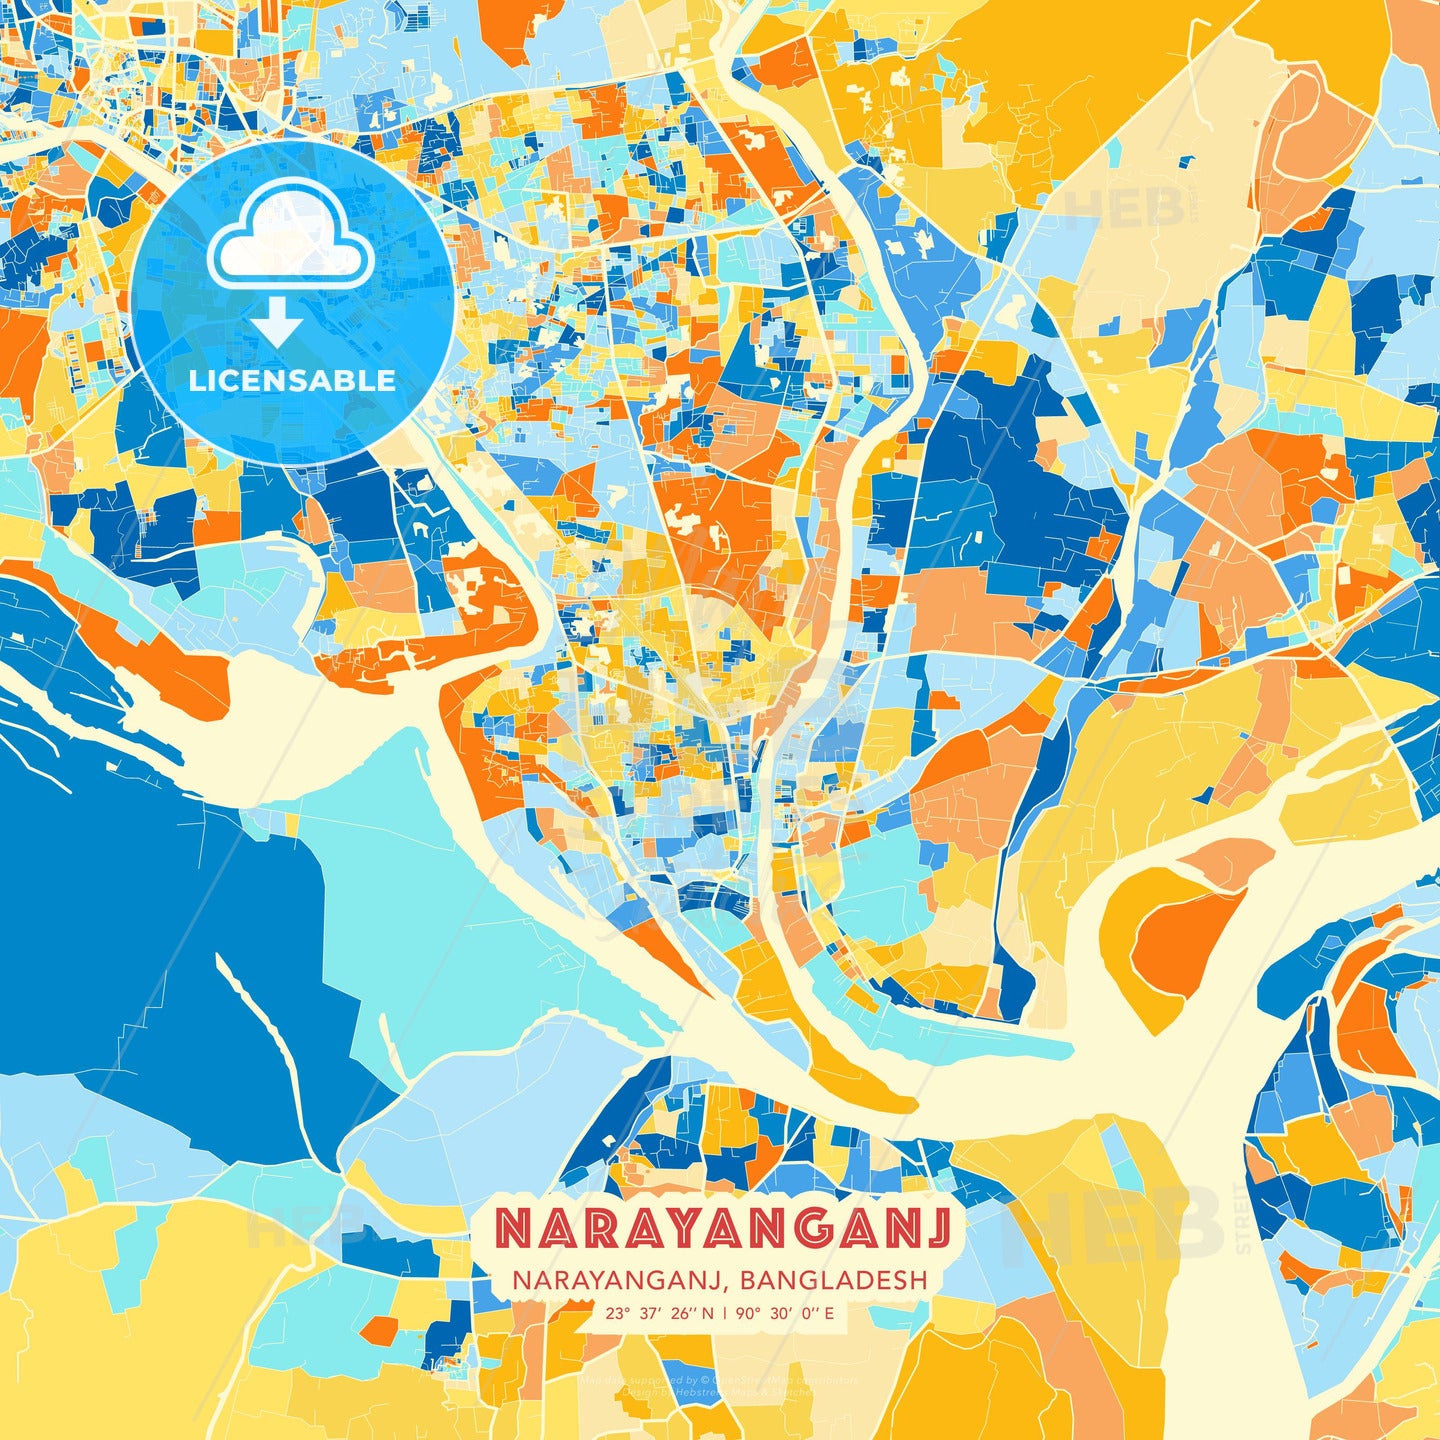 Narayanganj, Narayanganj, Bangladesh, map - HEBSTREITS Sketches